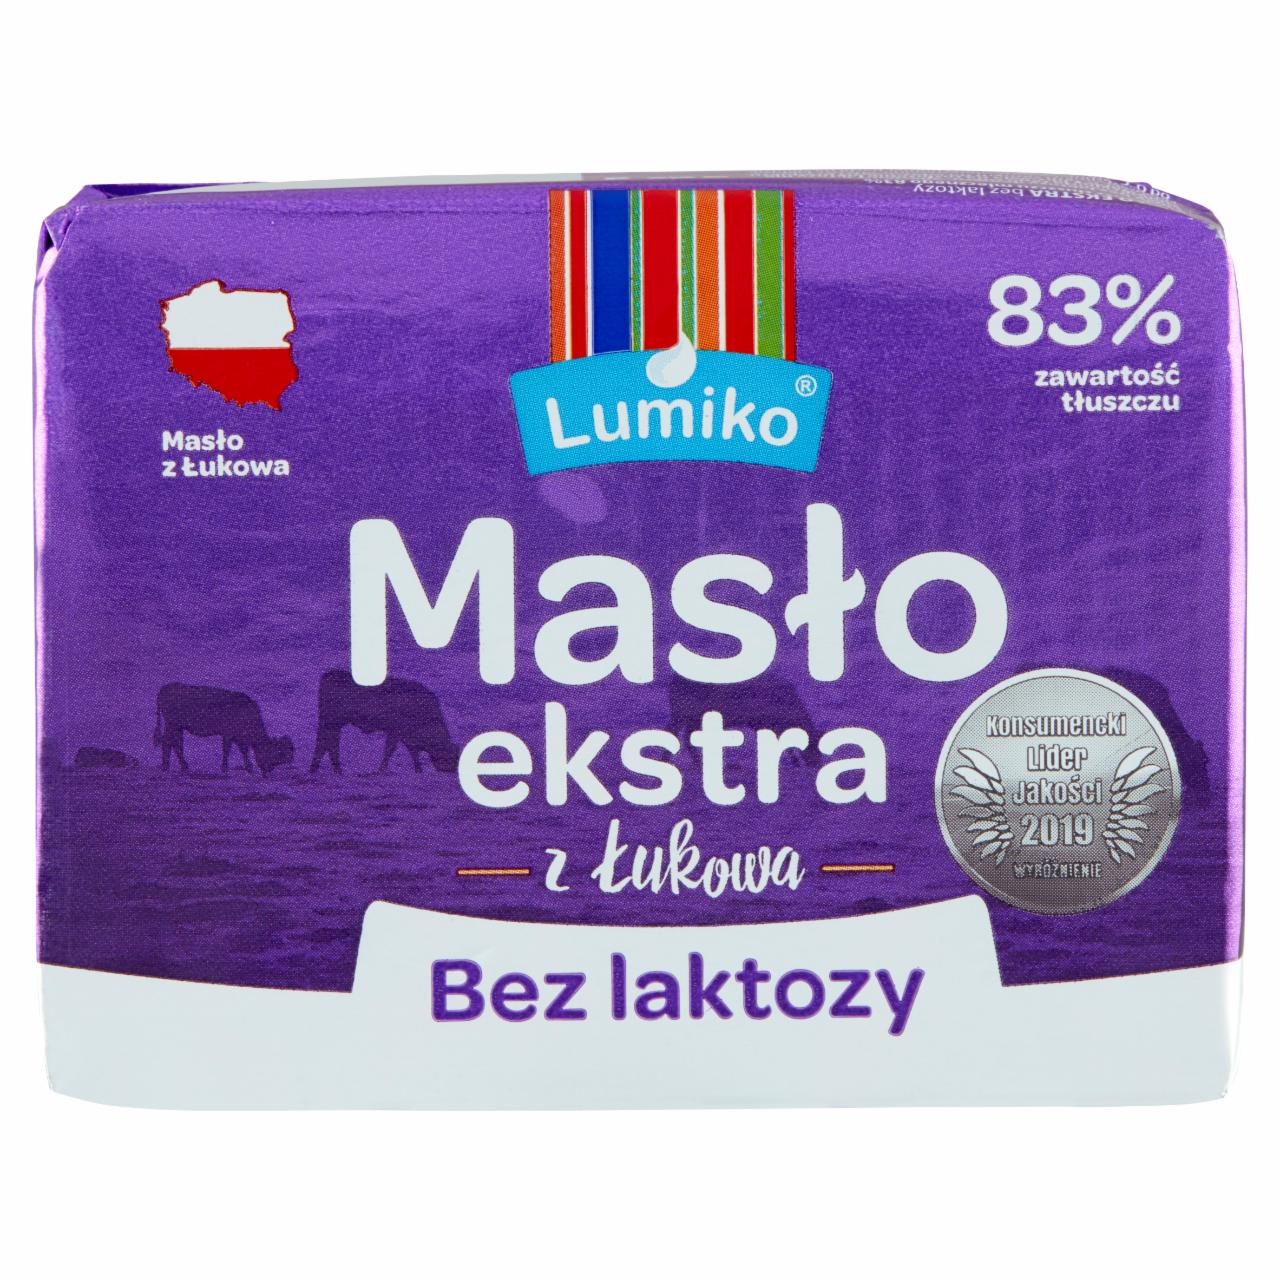 Zdjęcia - Masło ekstra z Łukowa bez laktozy 200 g